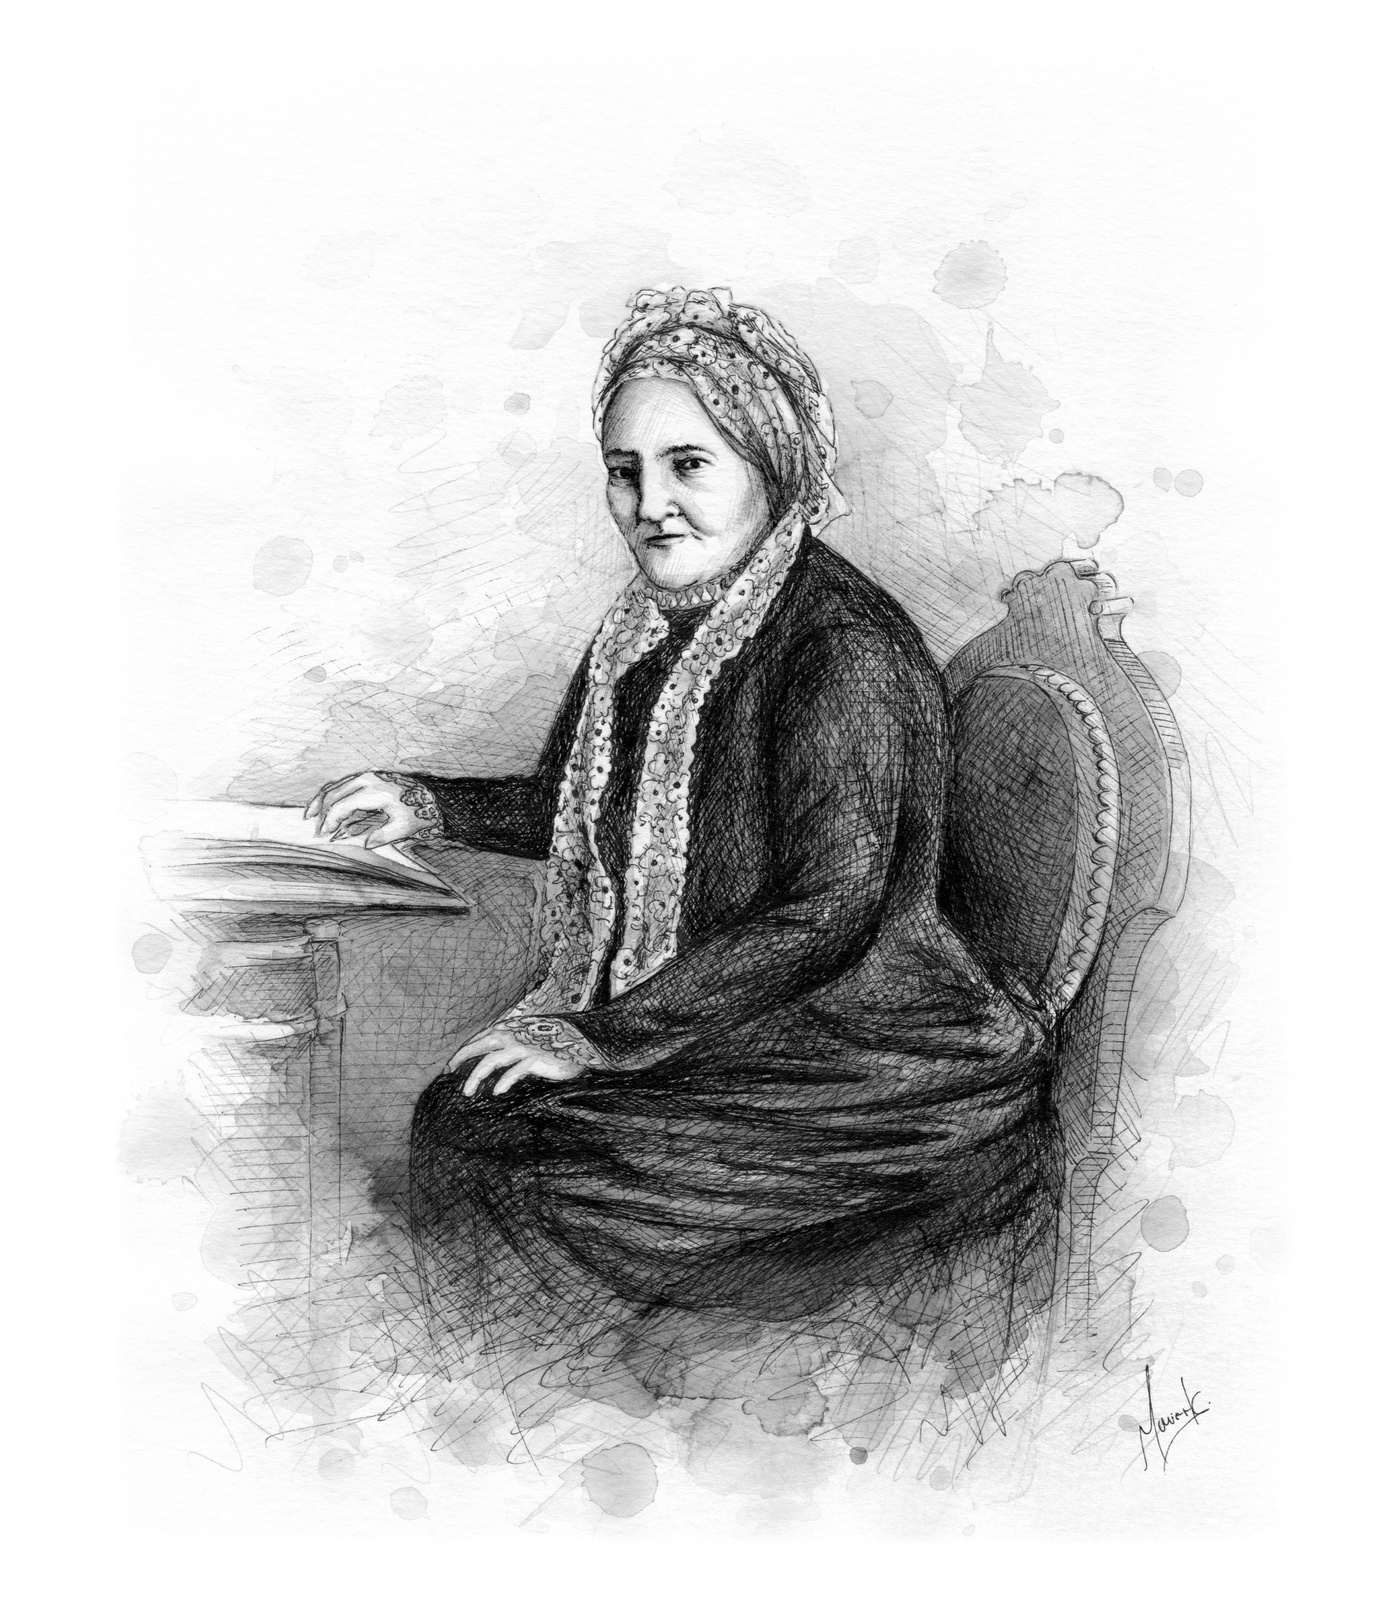 Marie-Hélène St-Michel - Grand-mère de Maude